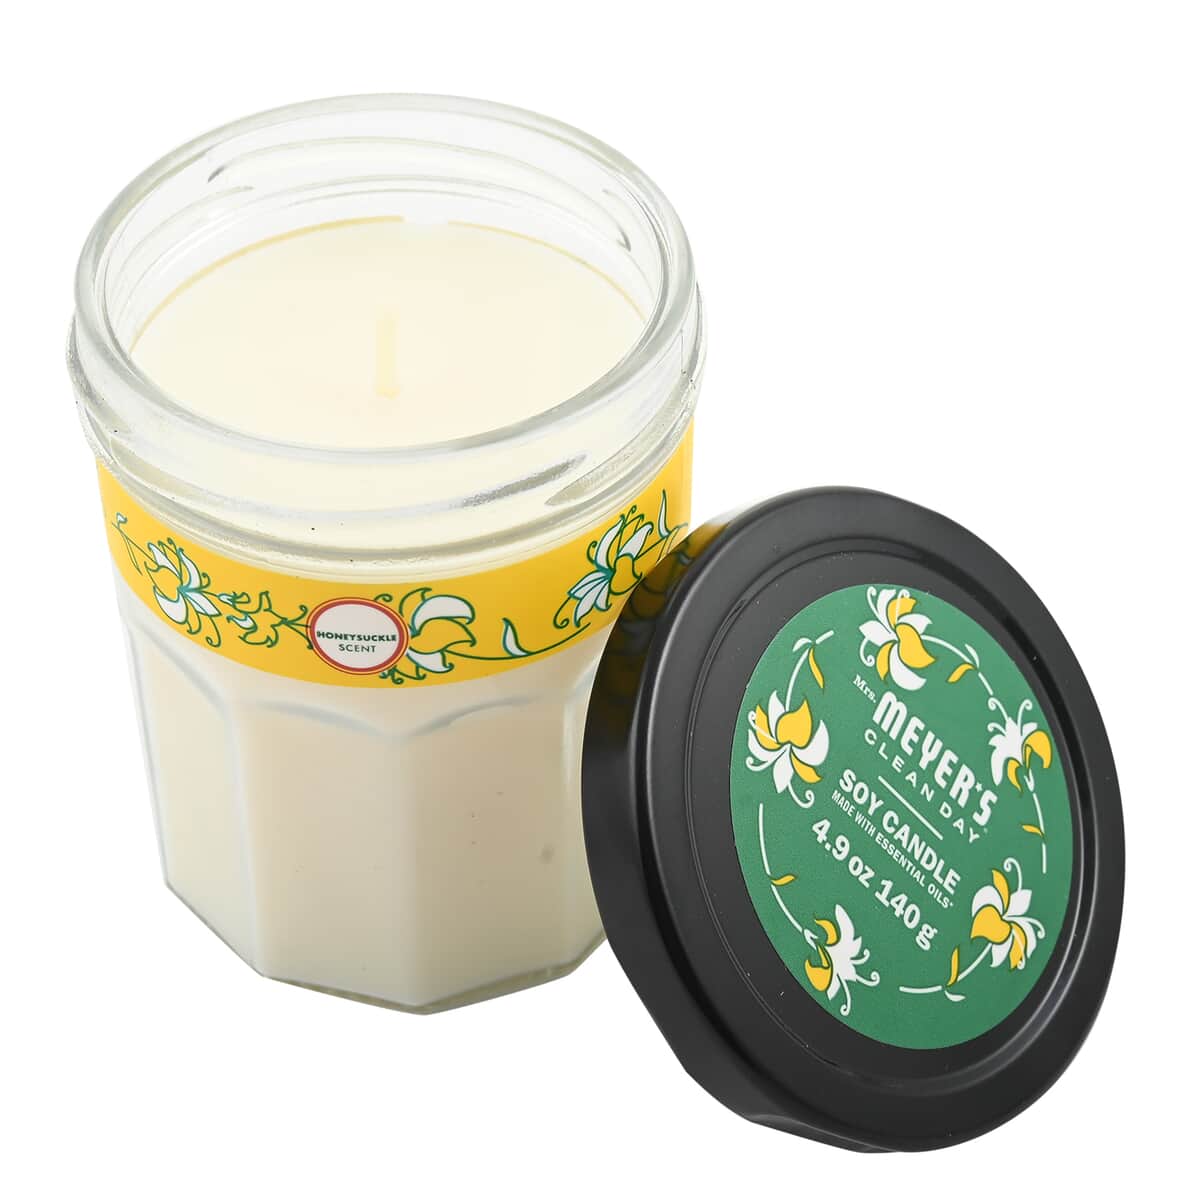 Mrs. Meyer's Clean Day Jar Candle - Honeysuckle 4.9 oz image number 0